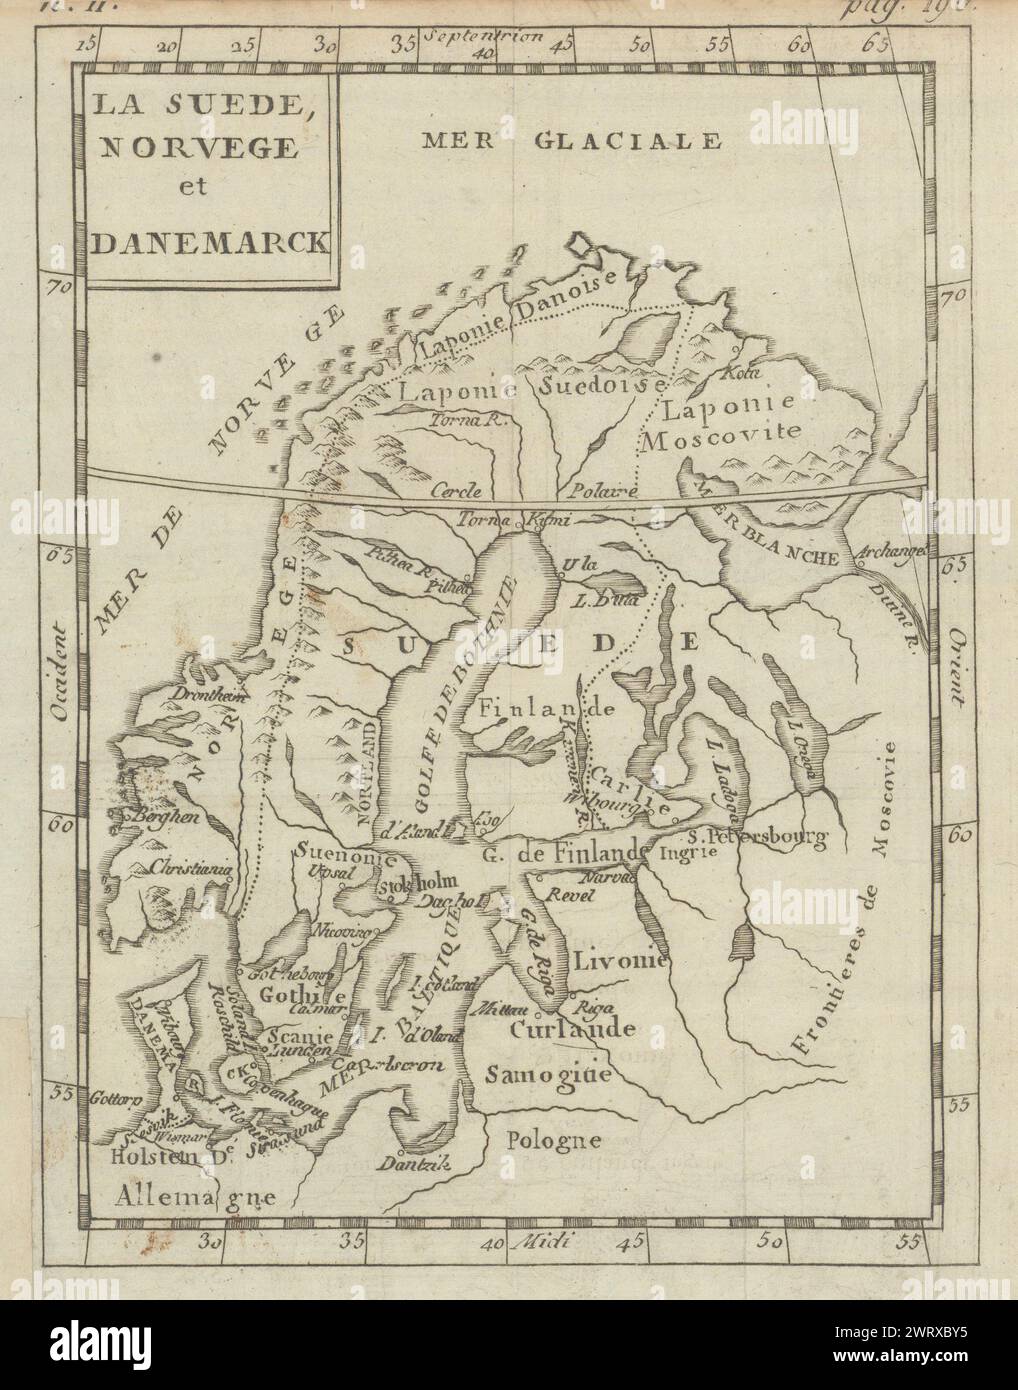 La Suede, Norvege et Danemarck. Scandinavie et régions baltes. Carte BUFFIER c1818 Banque D'Images